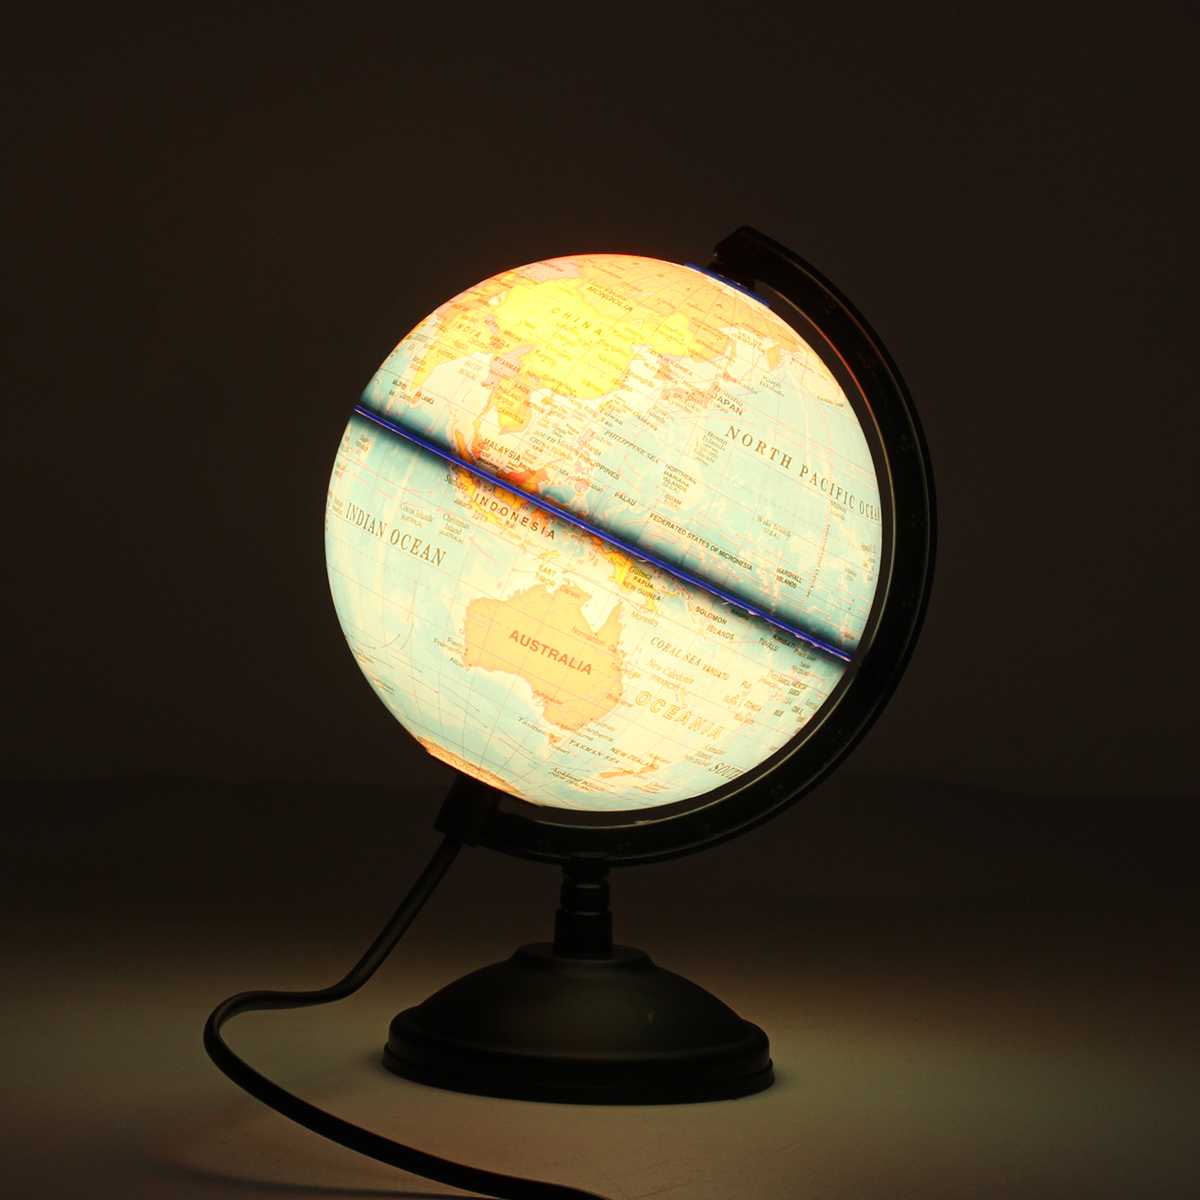 360 rotation verden globus kort førte lys med stativ hjemmekontor skrivebord dekoration børn børn jord geografi pædagogisk legetøj